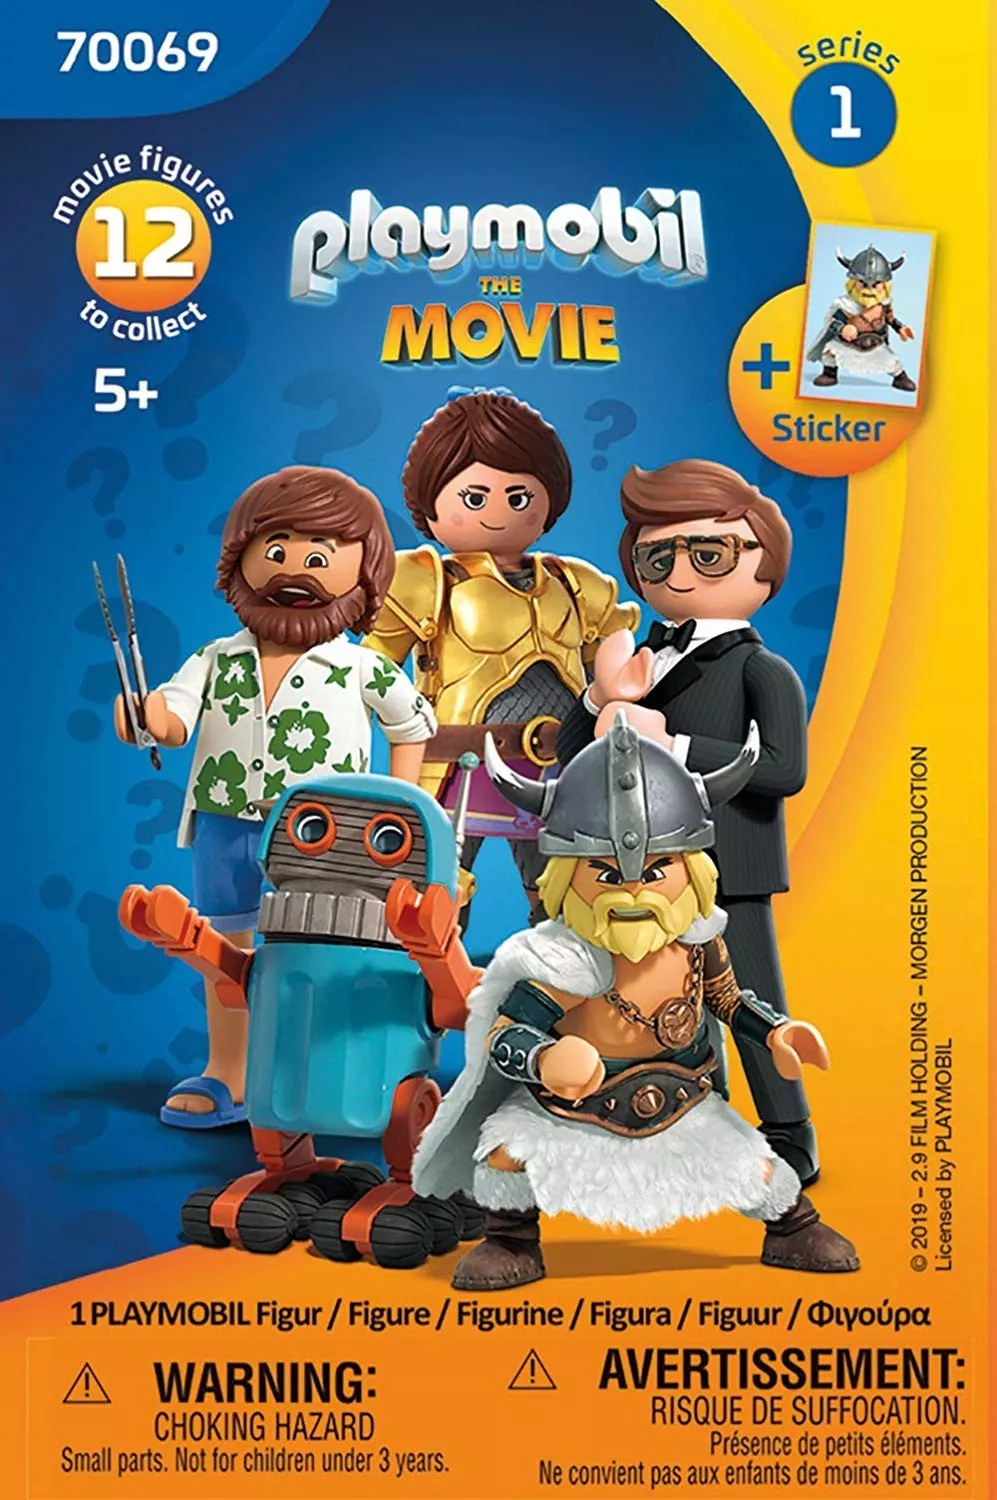 PLAYMOBIL 70069 Playmobil The Movie Figures Serie 1 (70069)